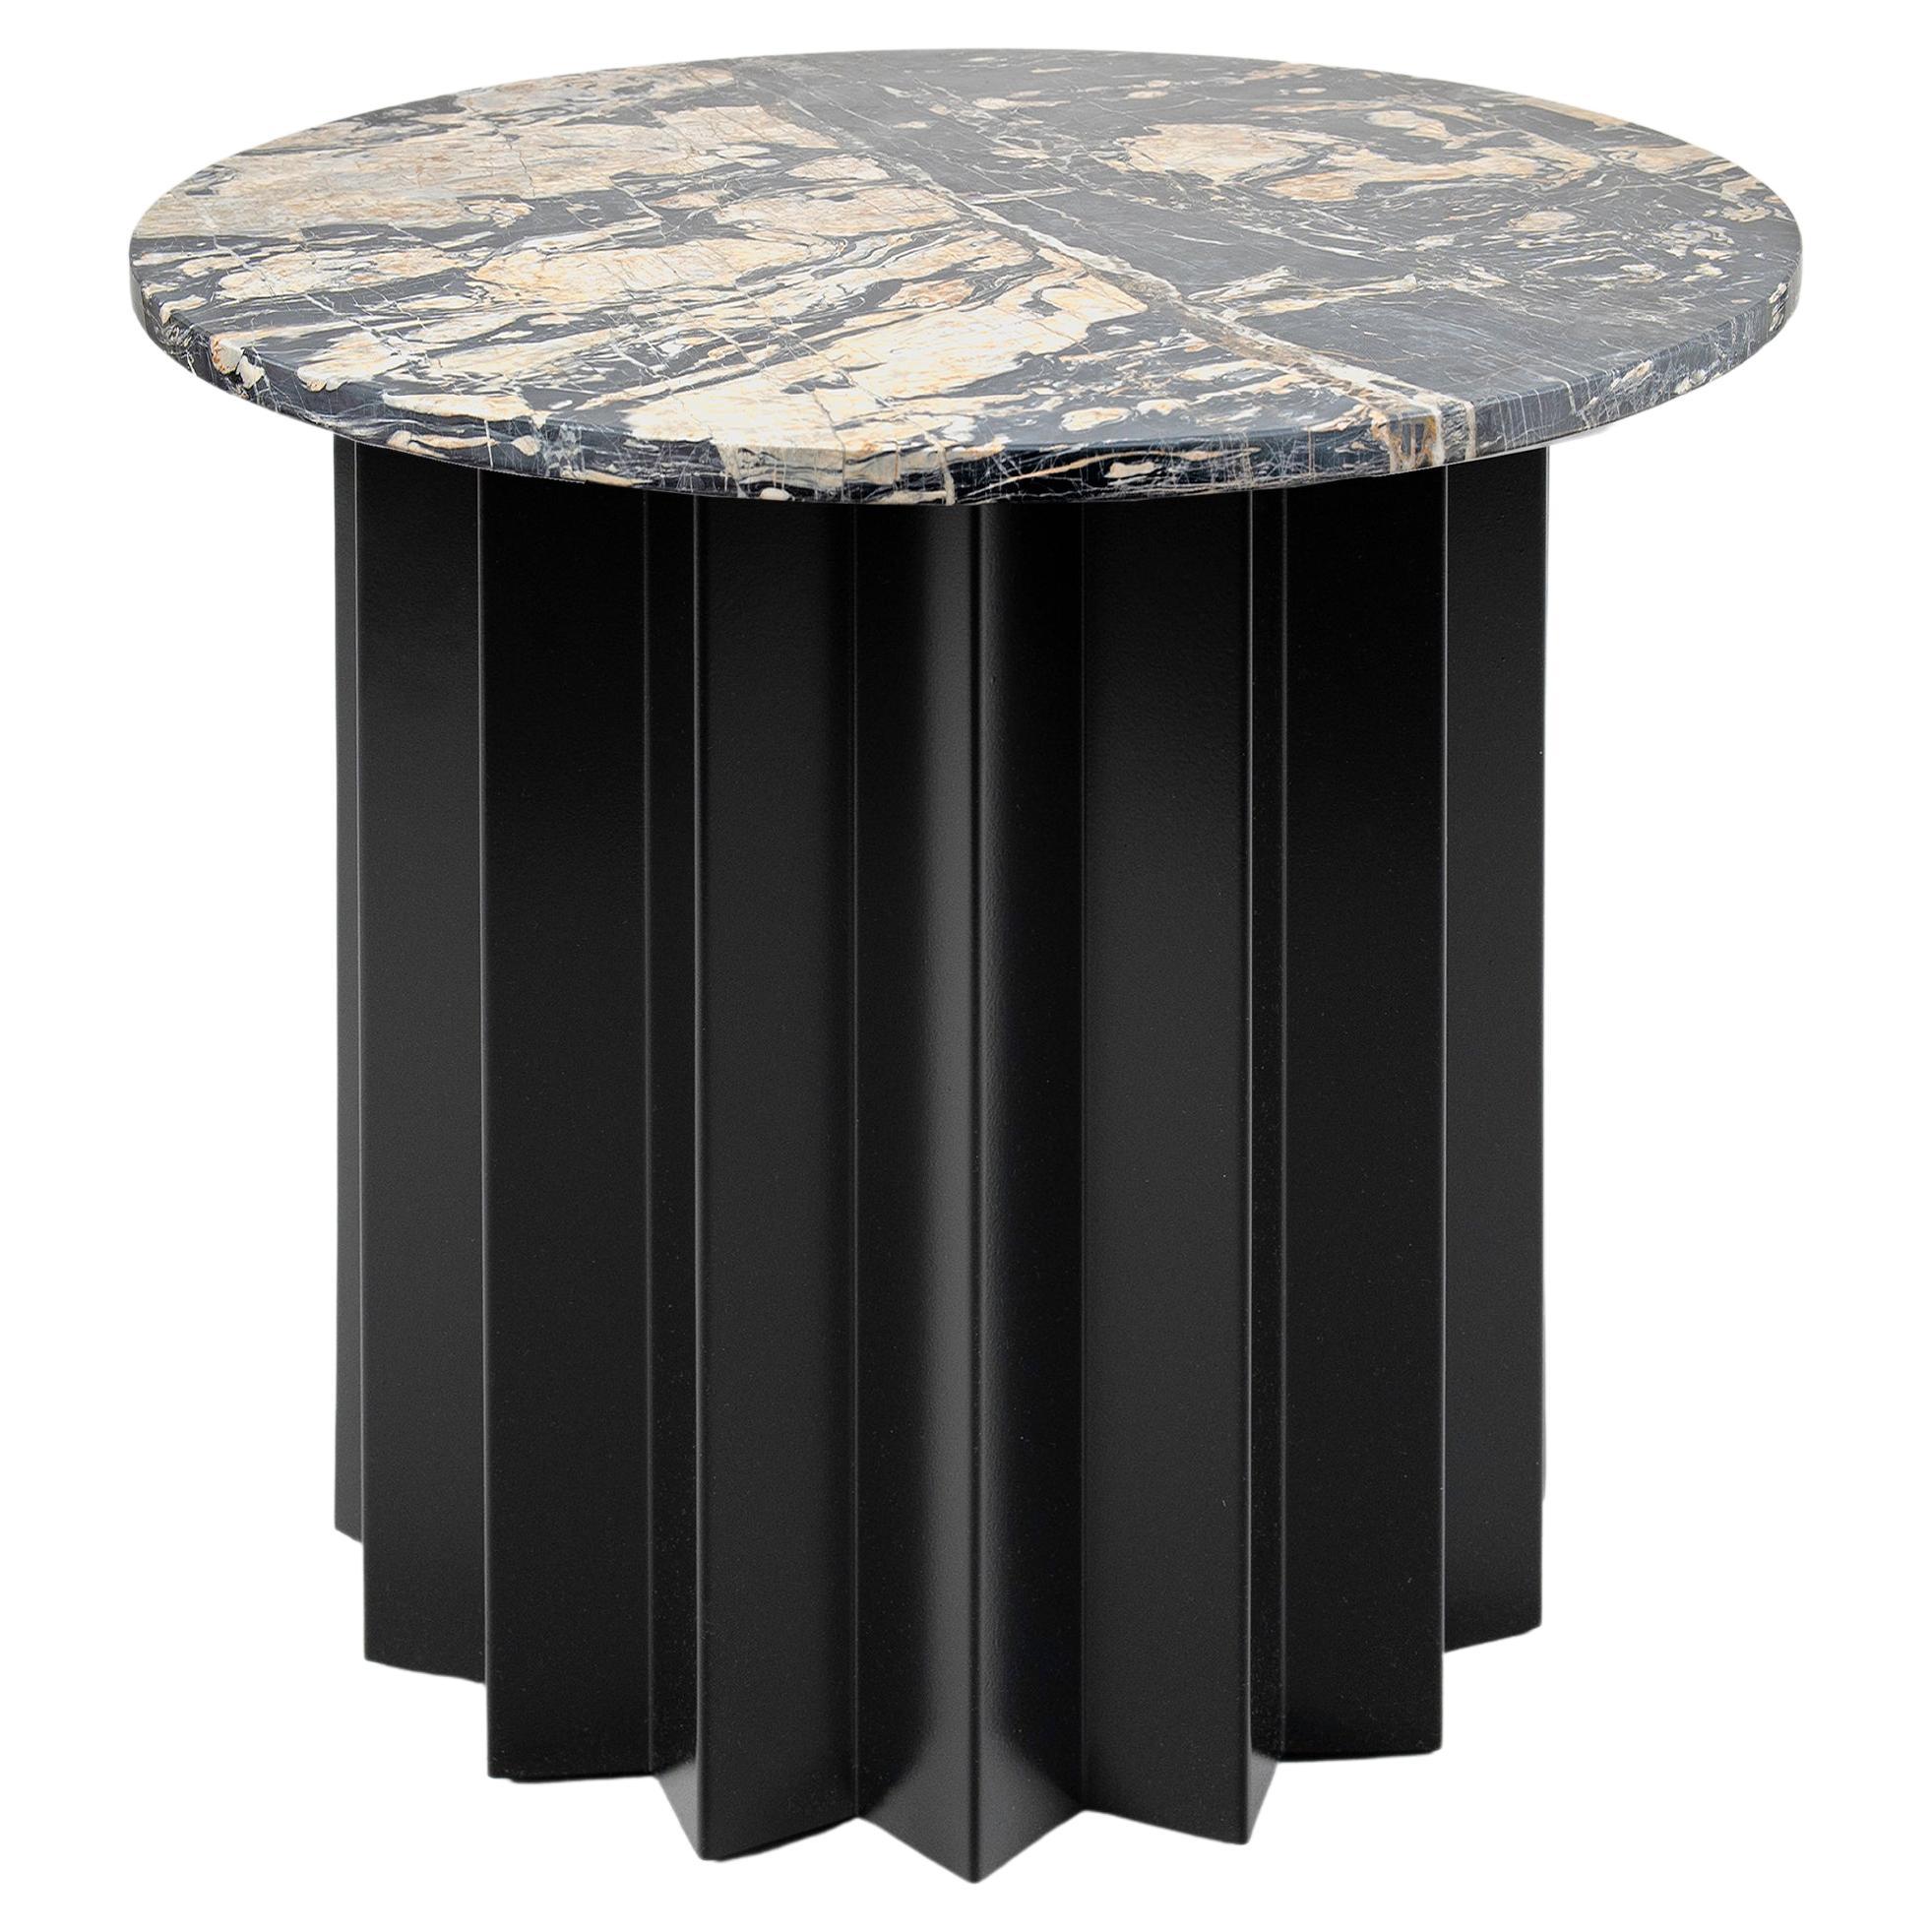 Table d'appoint basse moderne contemporaine, volume, base en métal et plateau en marbre Neo Picasso